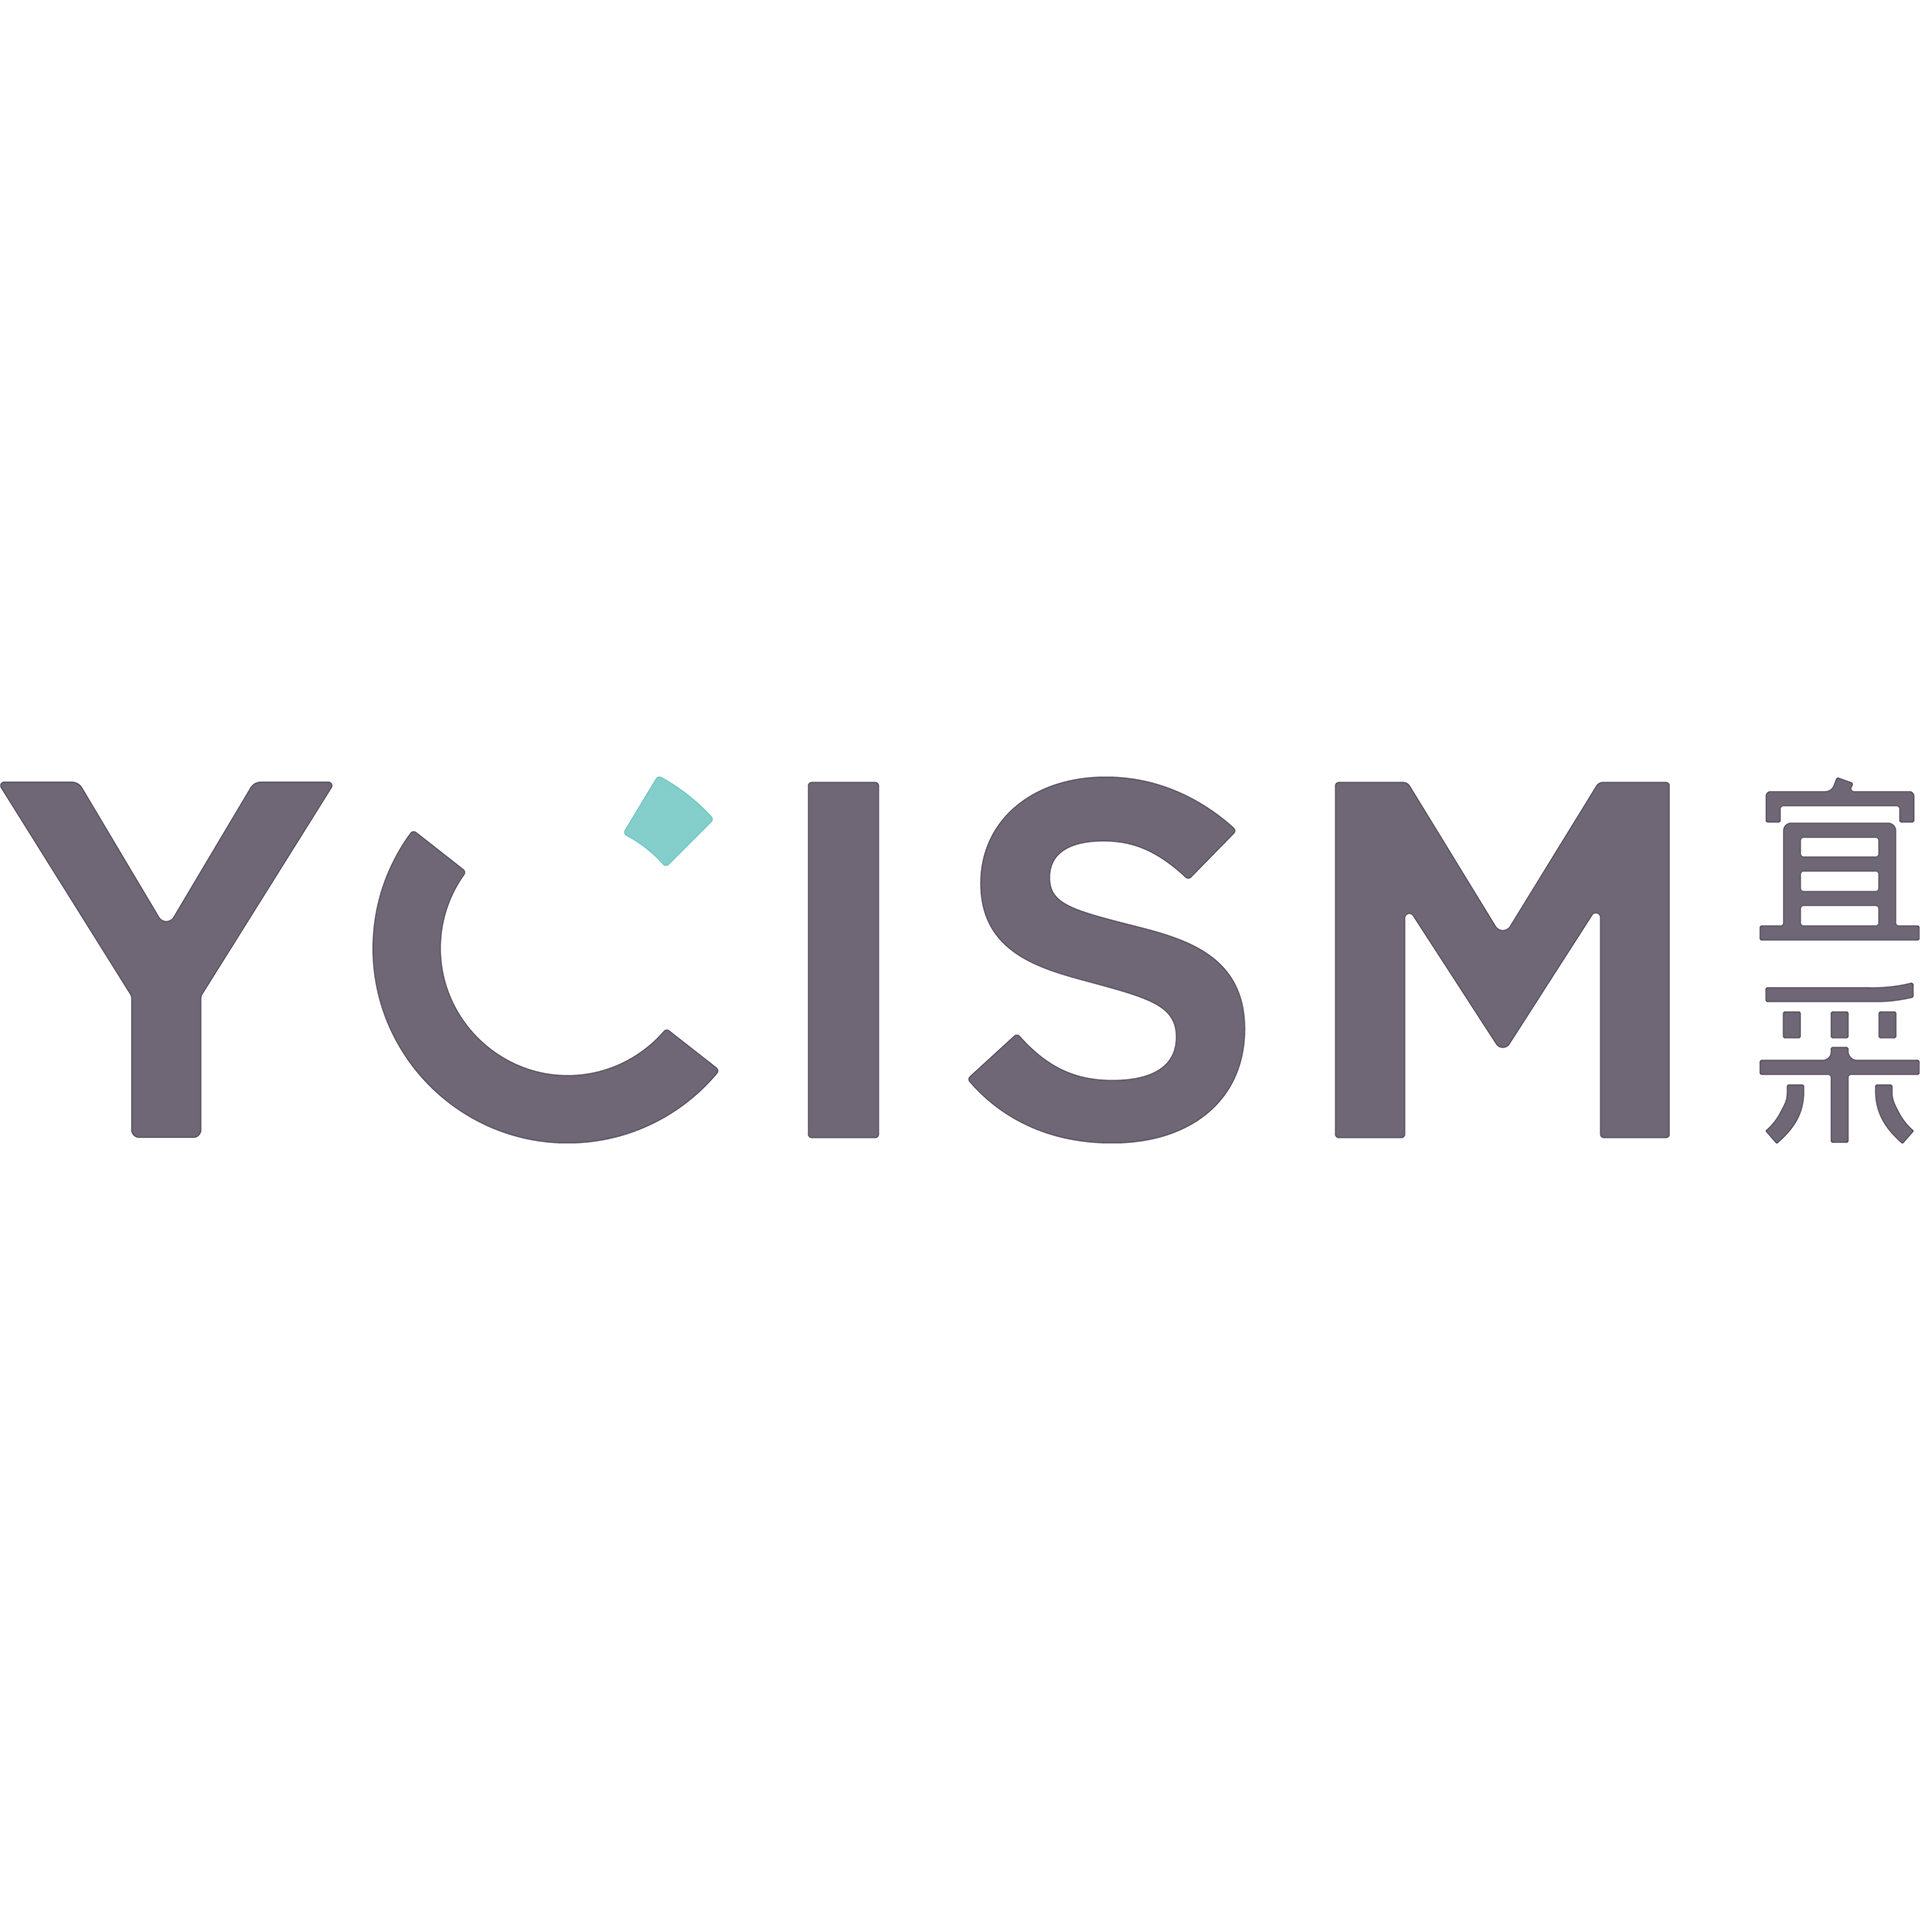 YCISM 宜采 - 北京宜采健康管理咨询有限公司